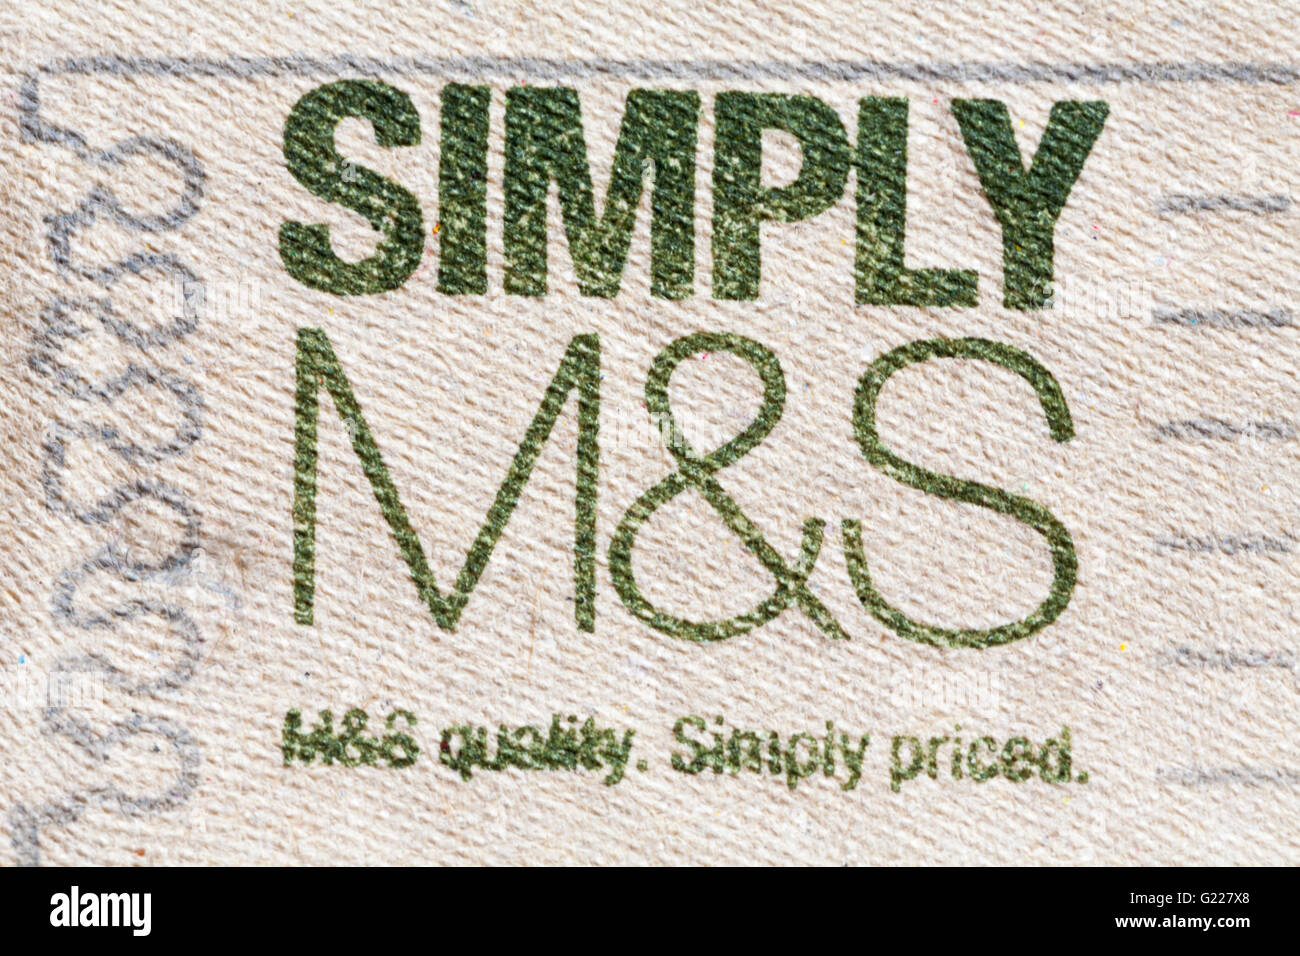 Semplicemente M&S M&S qualità prezzo semplicemente - informazioni sul cartone di Marks & Spencer semplicemente M&S British free range uova Foto Stock